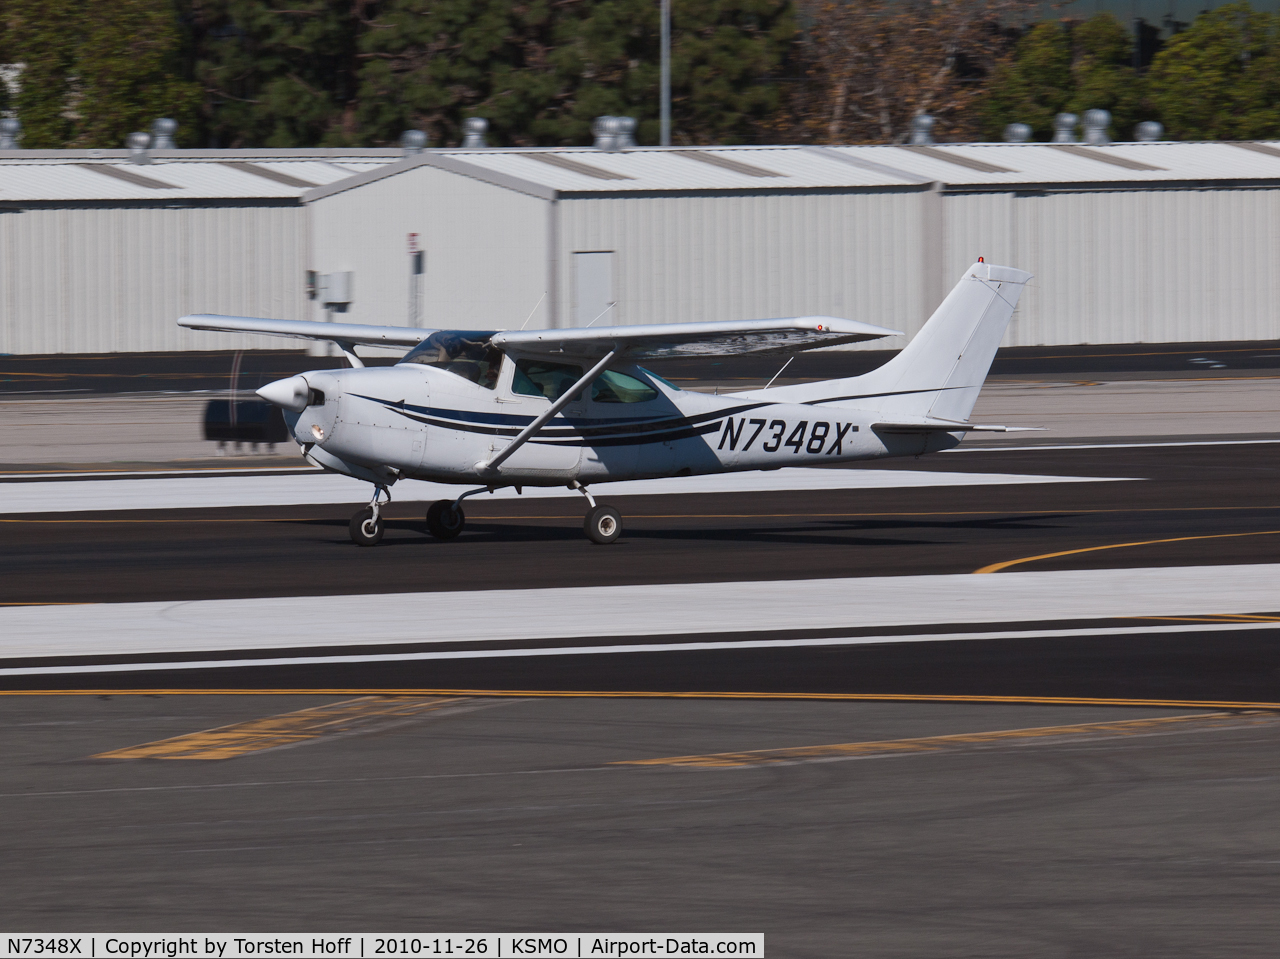 N7348X, 1977 Cessna R182 Skylane RG C/N R18200083, N7348X departing from RWY 21